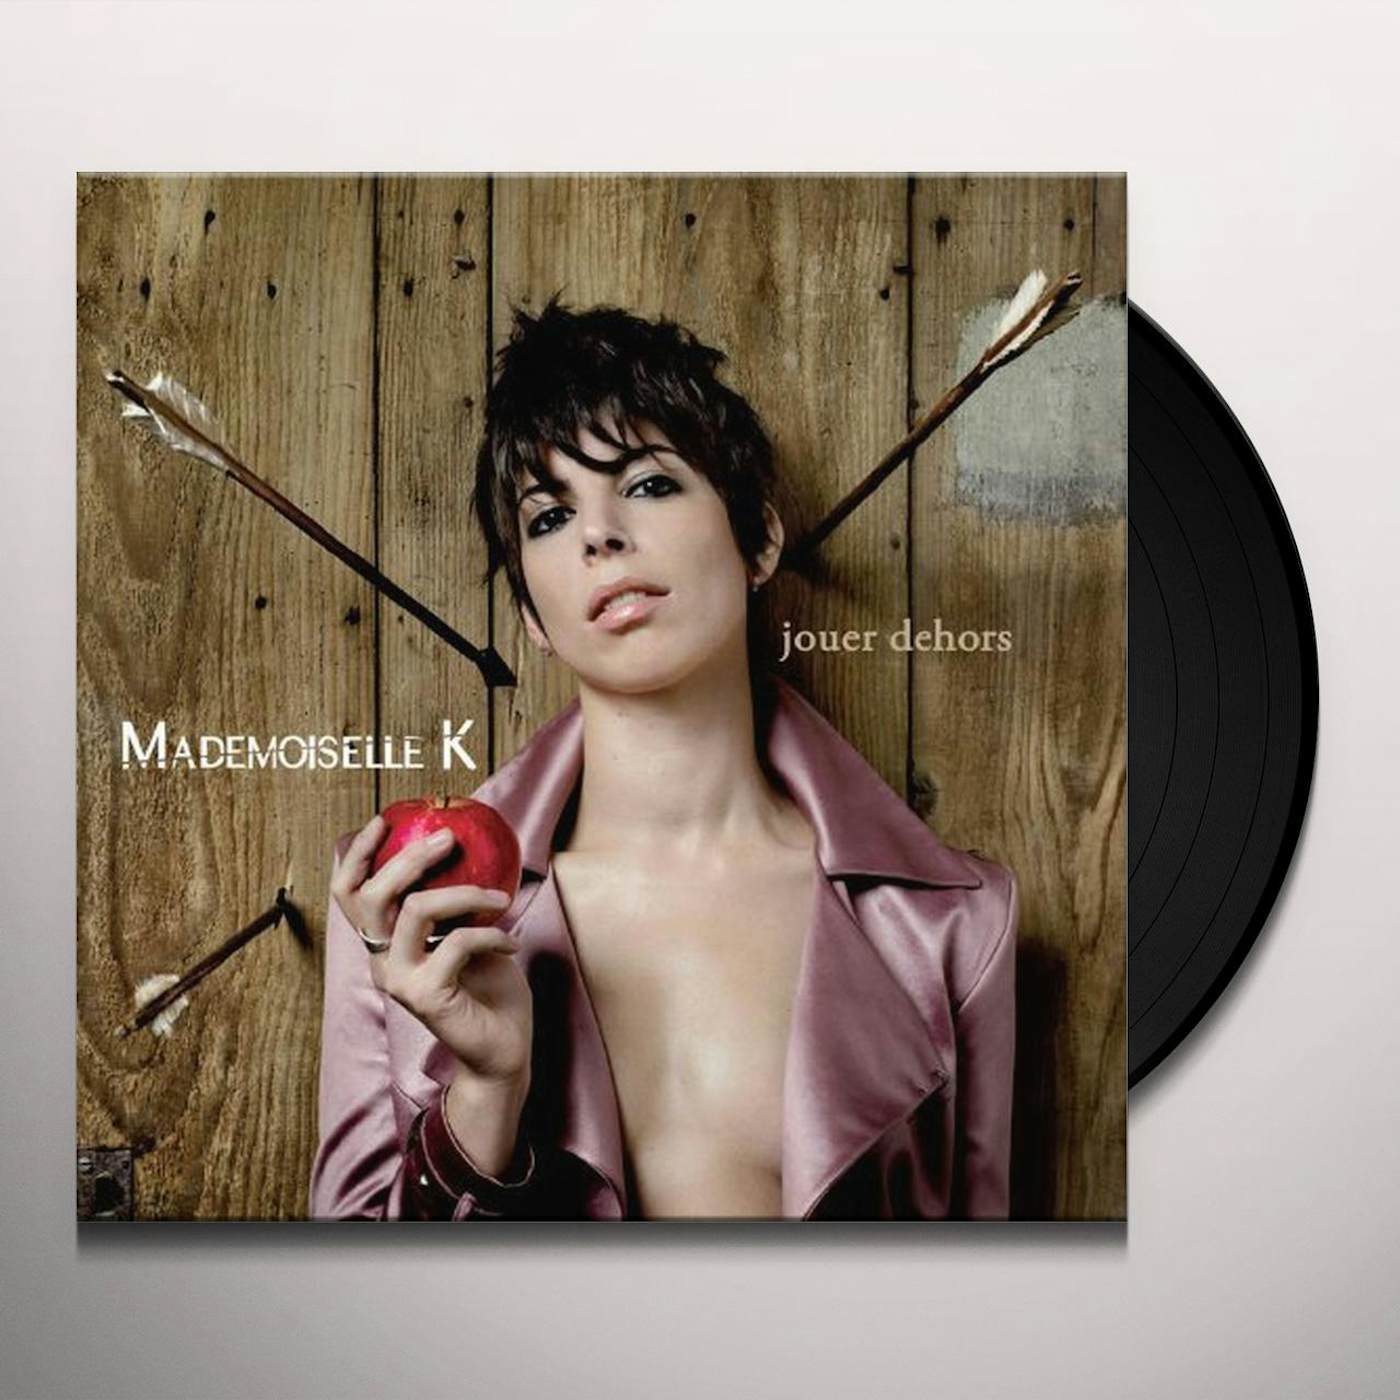 Mademoiselle K. JOUER DEHORS (GER) Vinyl Record